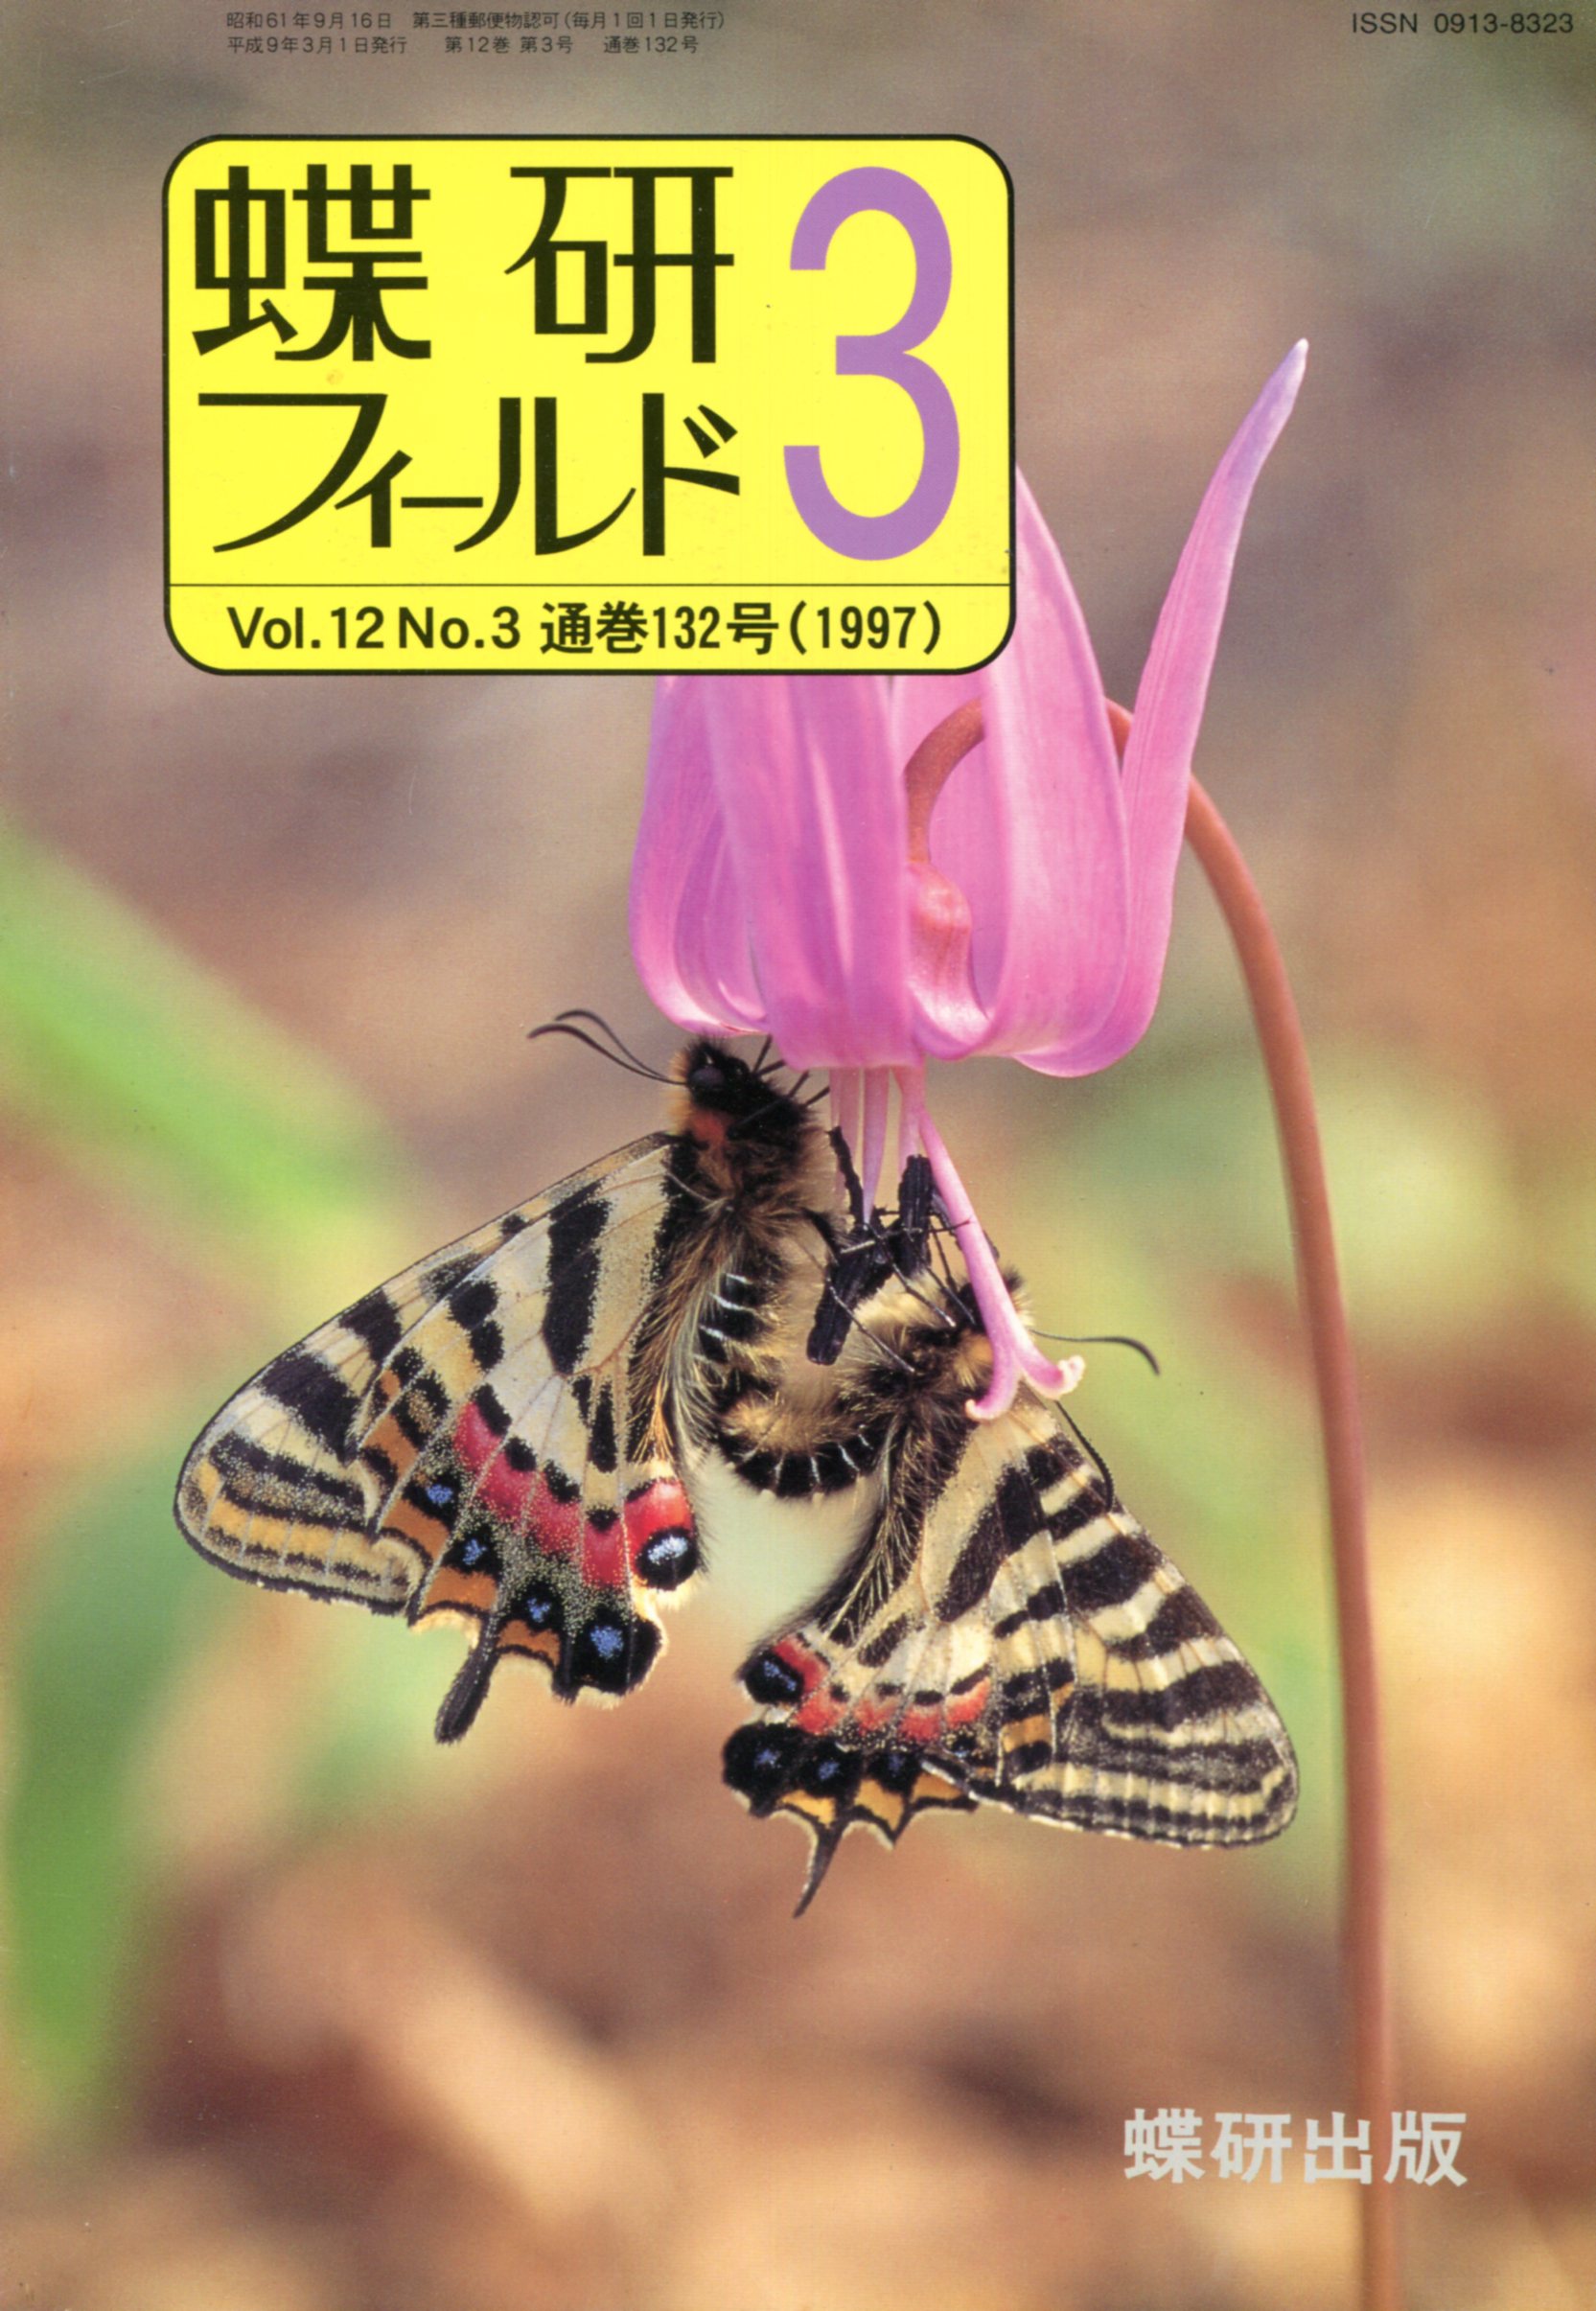 スーパー 採集ガイド⑤ 北海道 南西部編 蝶研出版 - 自然科学と技術